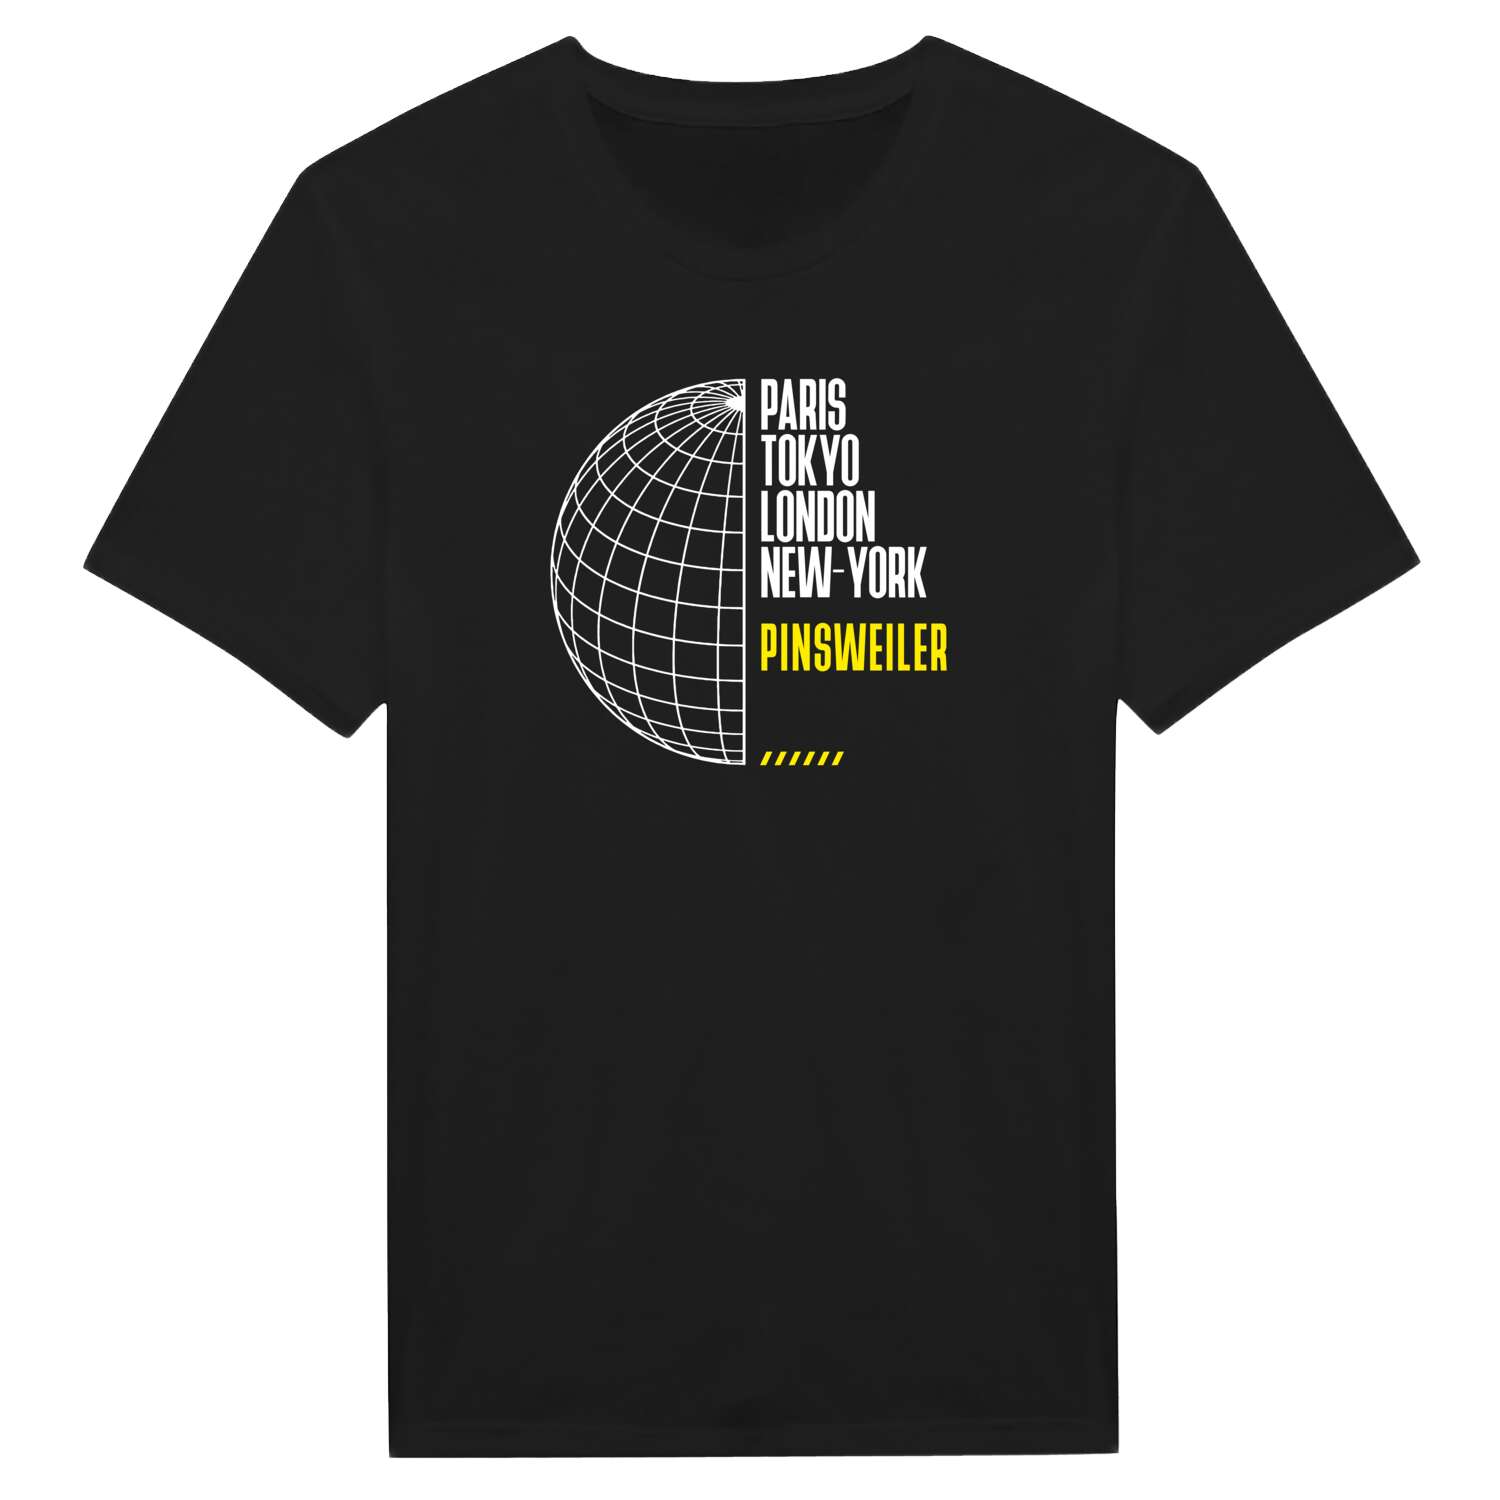 Pinsweiler T-Shirt »Paris Tokyo London«